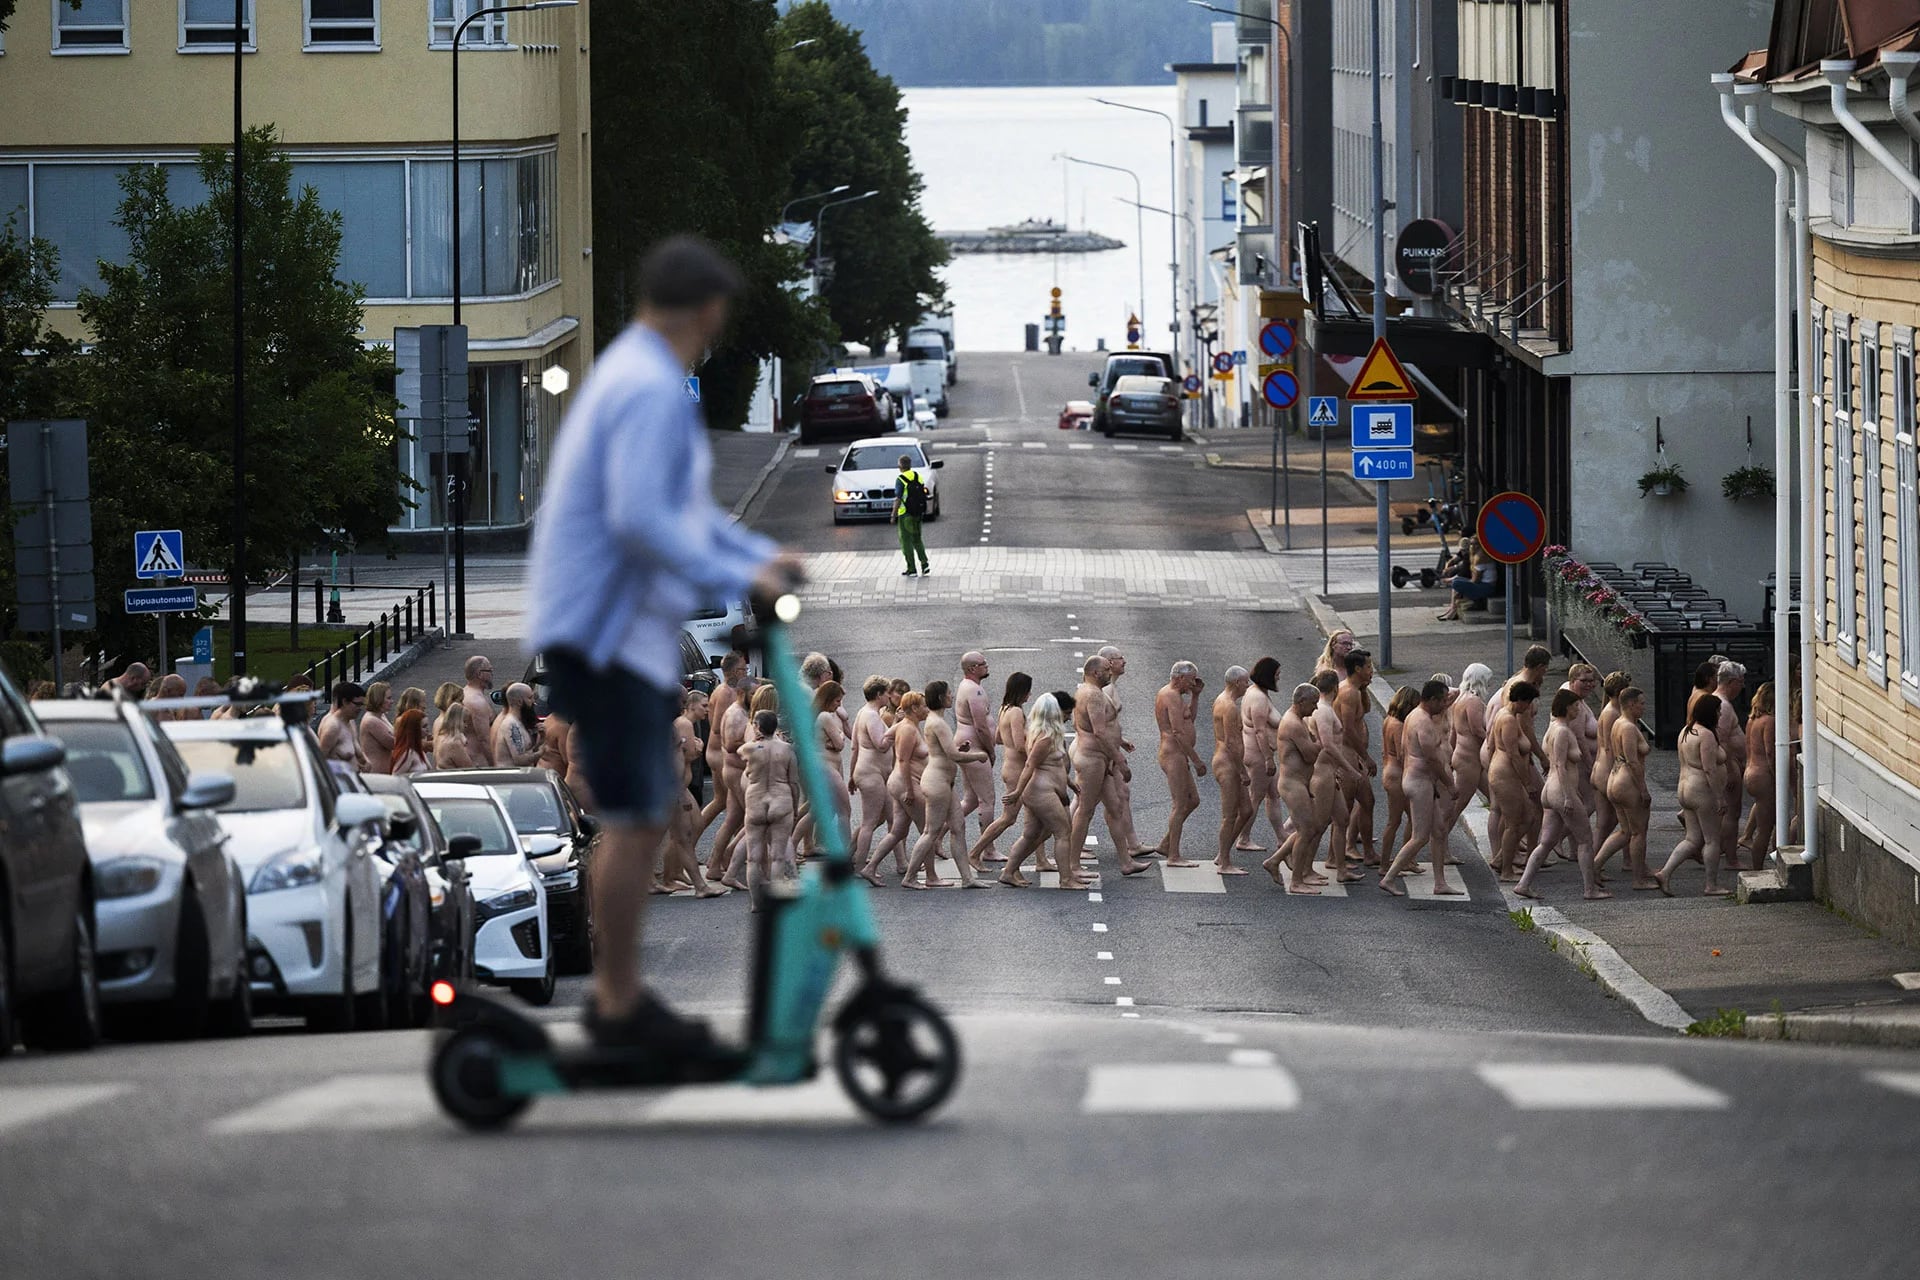 Los modelos desnudos sorprendieron en las calles de Kuopio, Finlandia (Matias Honkamaa / Lehtikuva / AFP)
